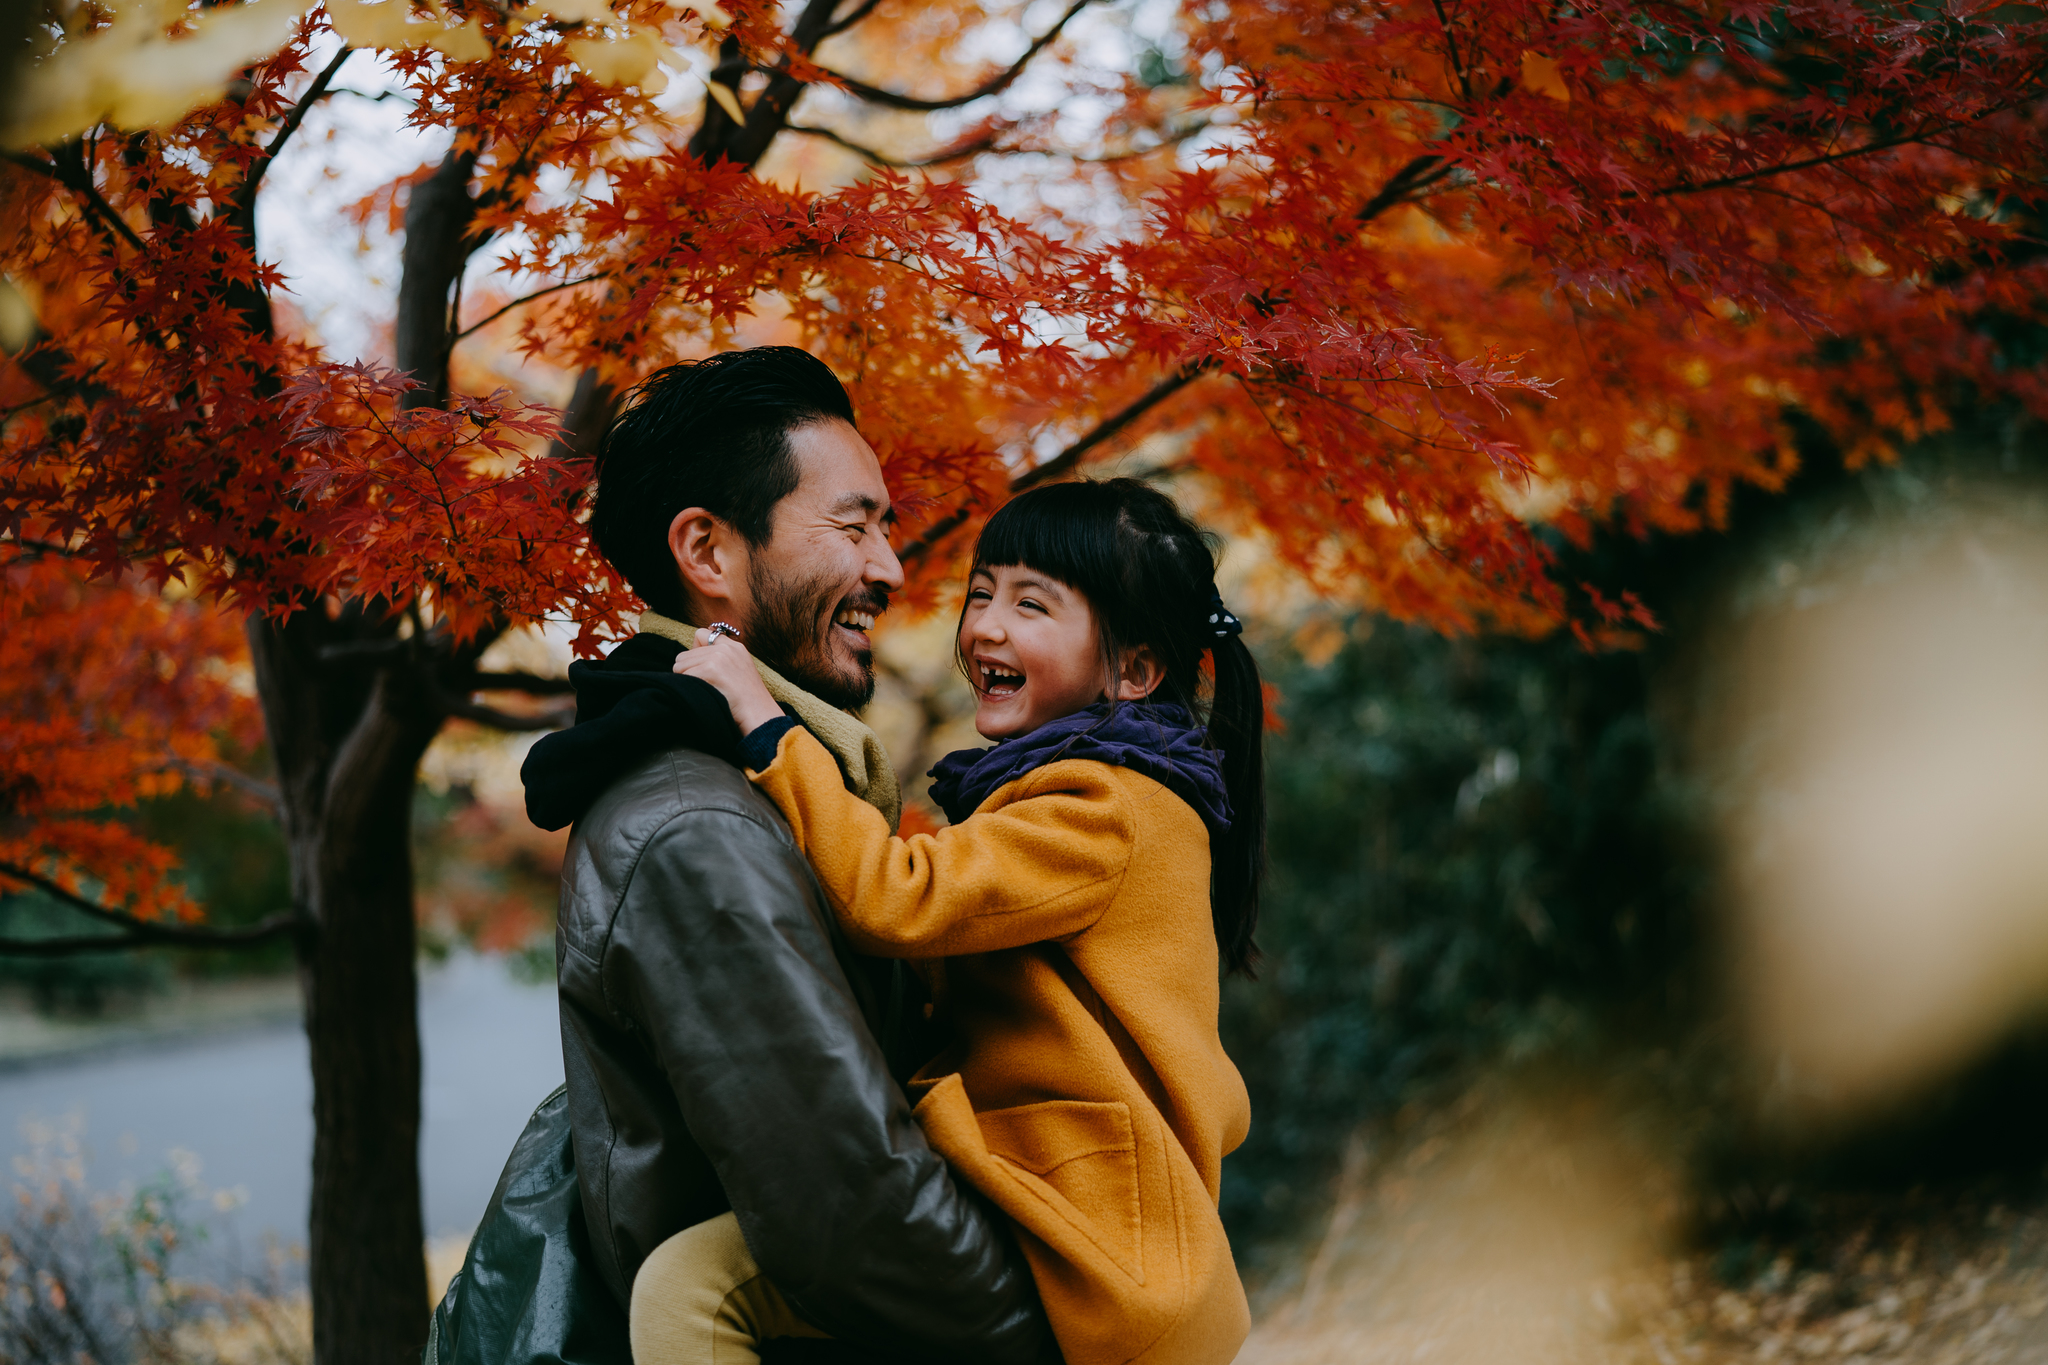 Hábitos japoneses para ser más felices: del baño de bosque a la hospitalidad.